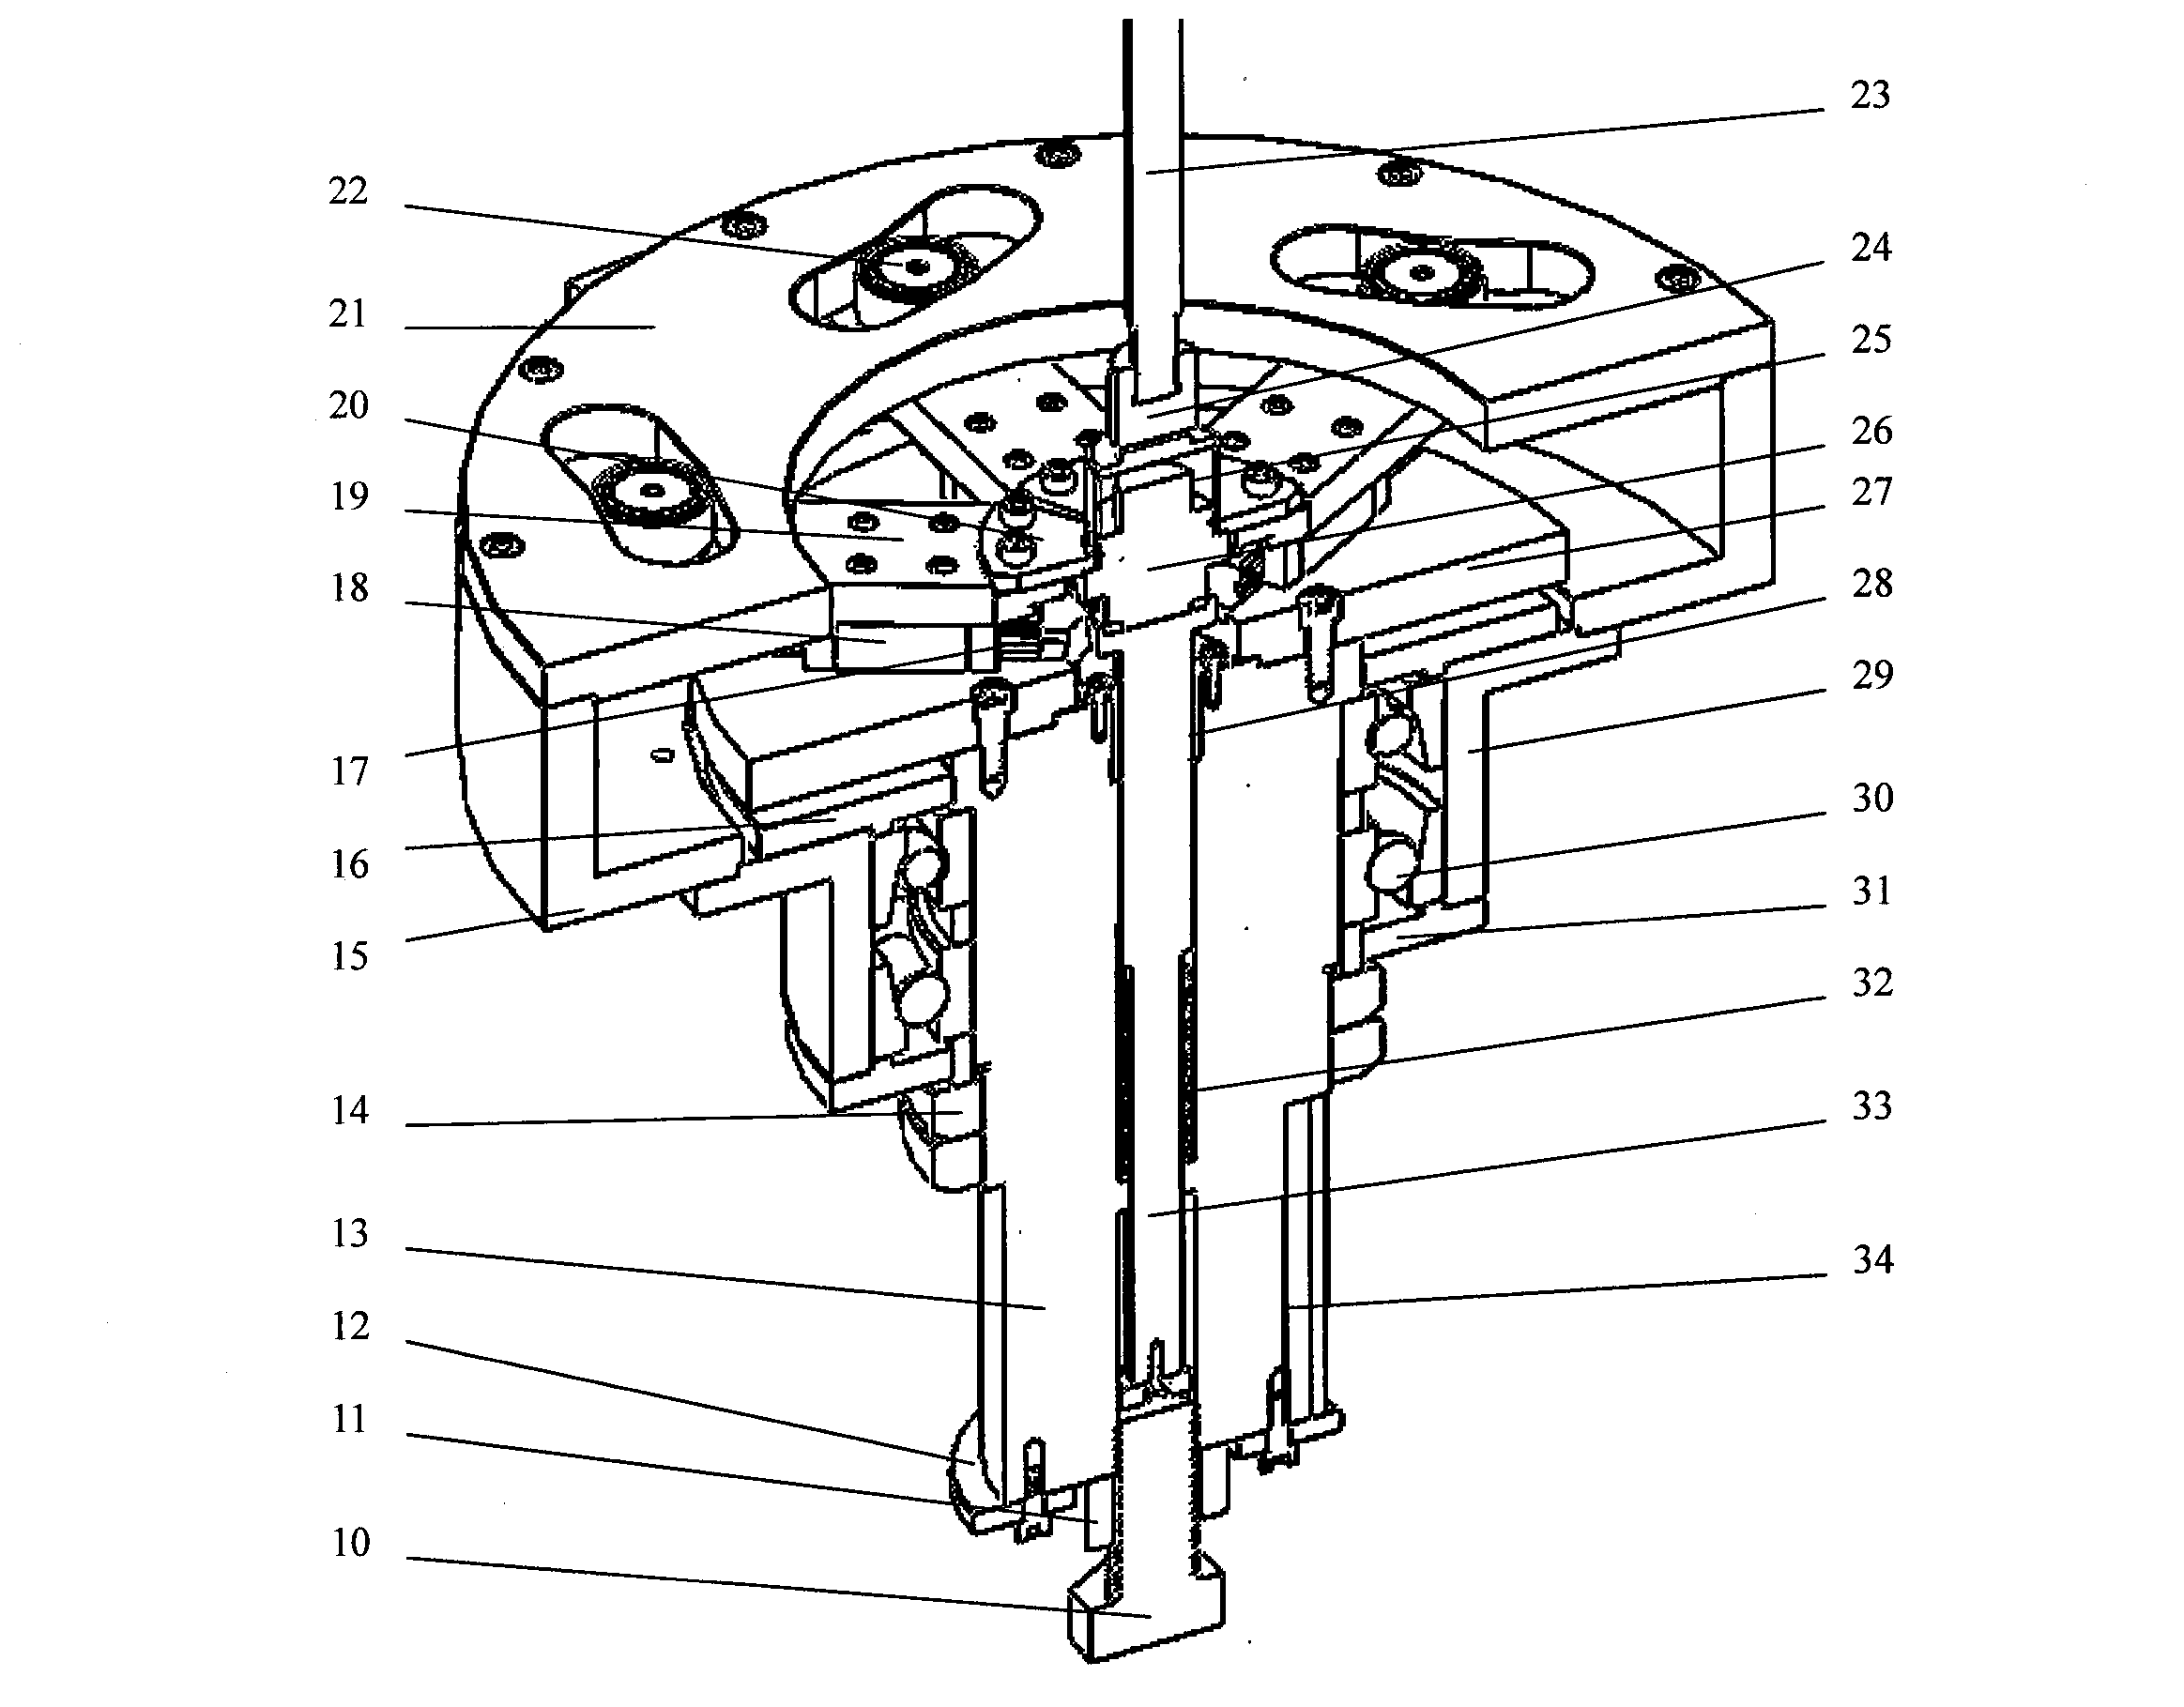 Rivet press assembling mechanism